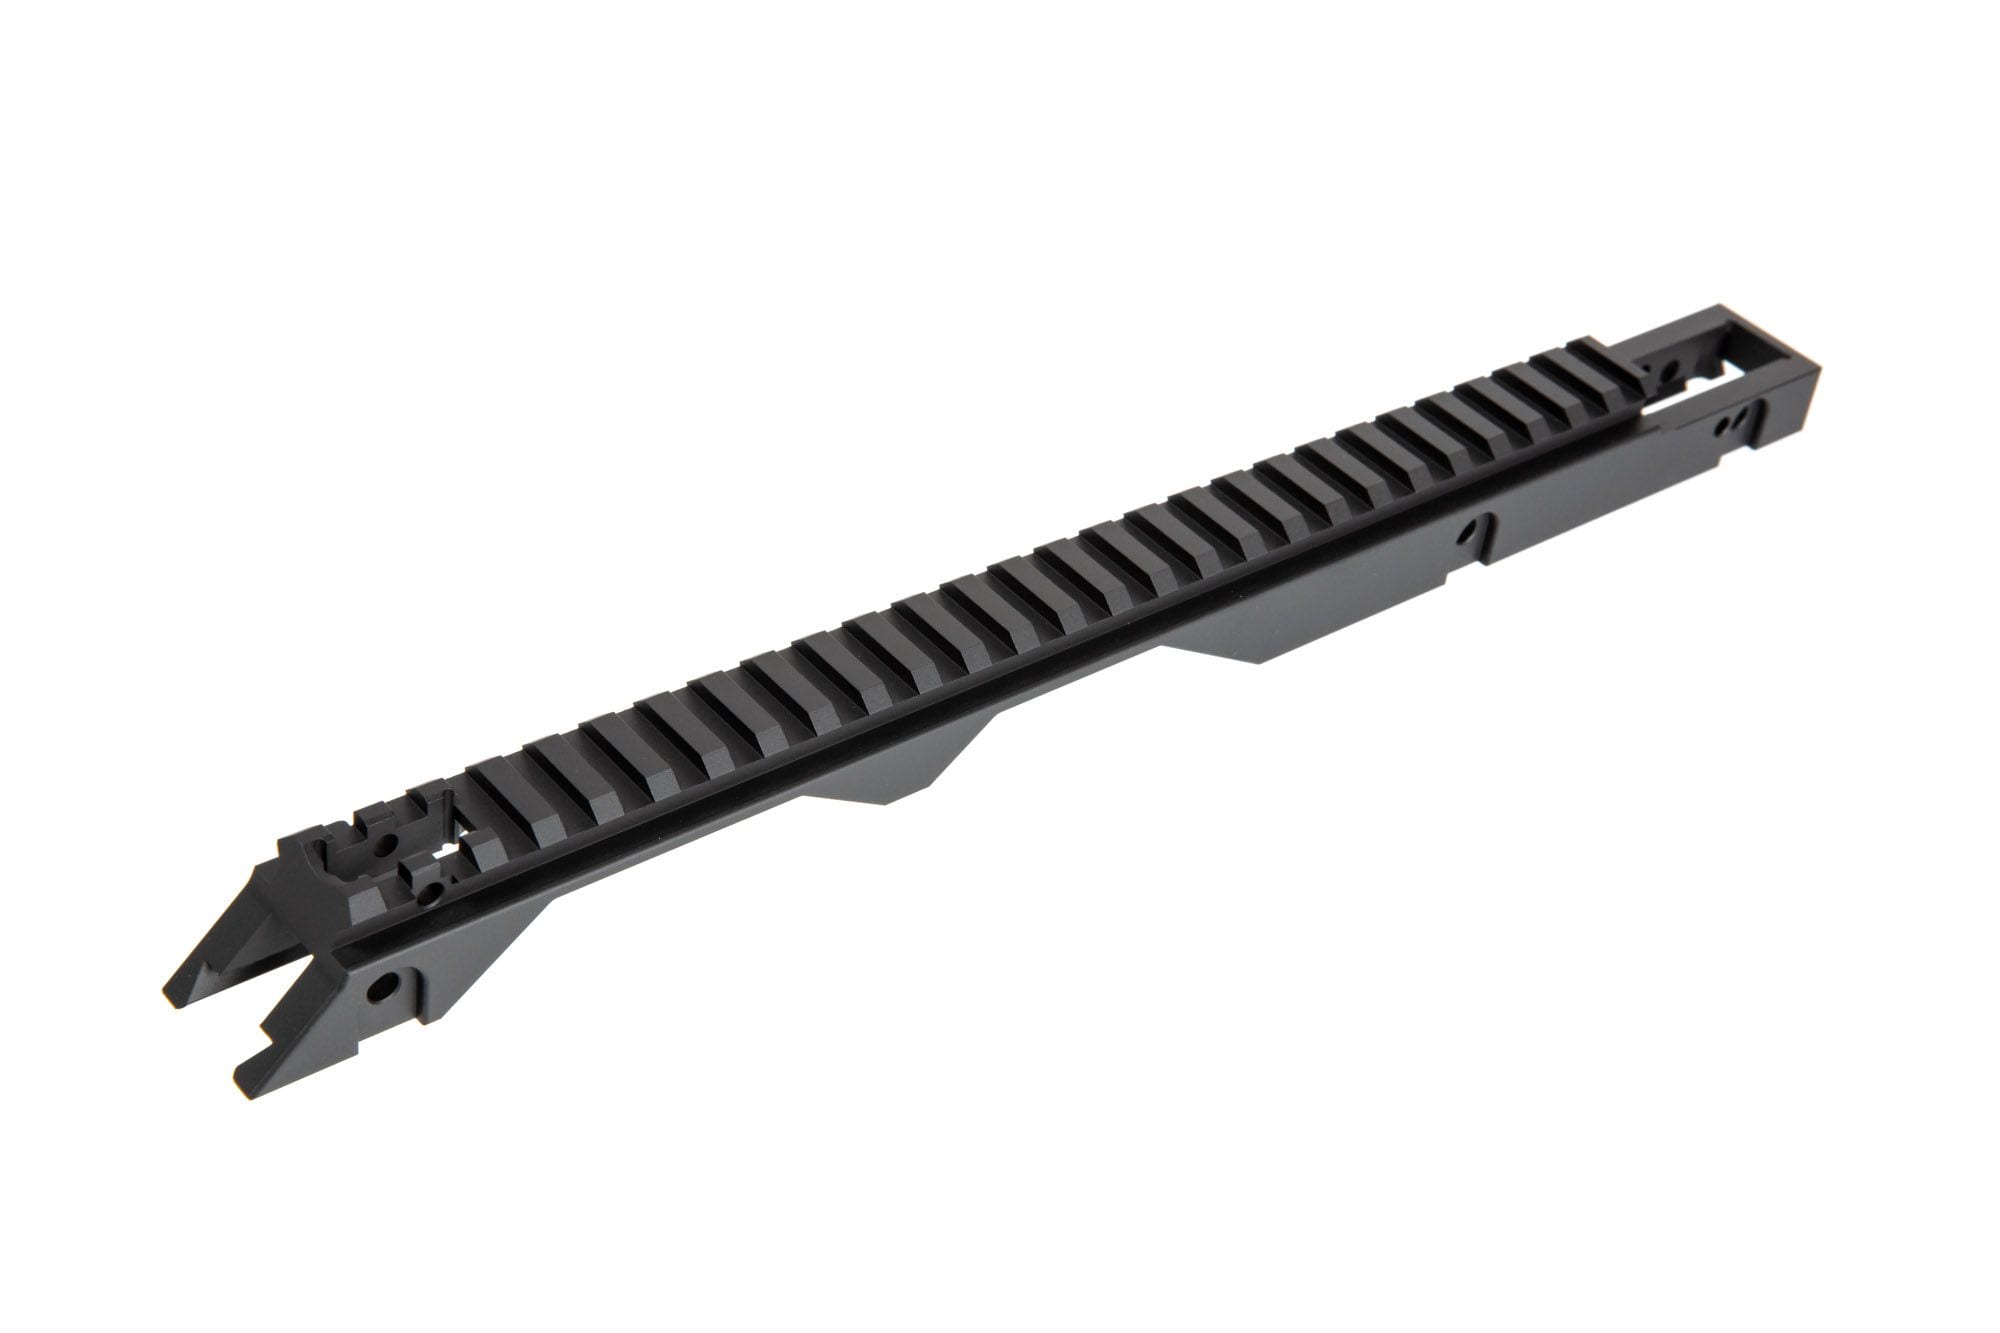 Top RIS Rail for Specna Arms G-Series Replicas